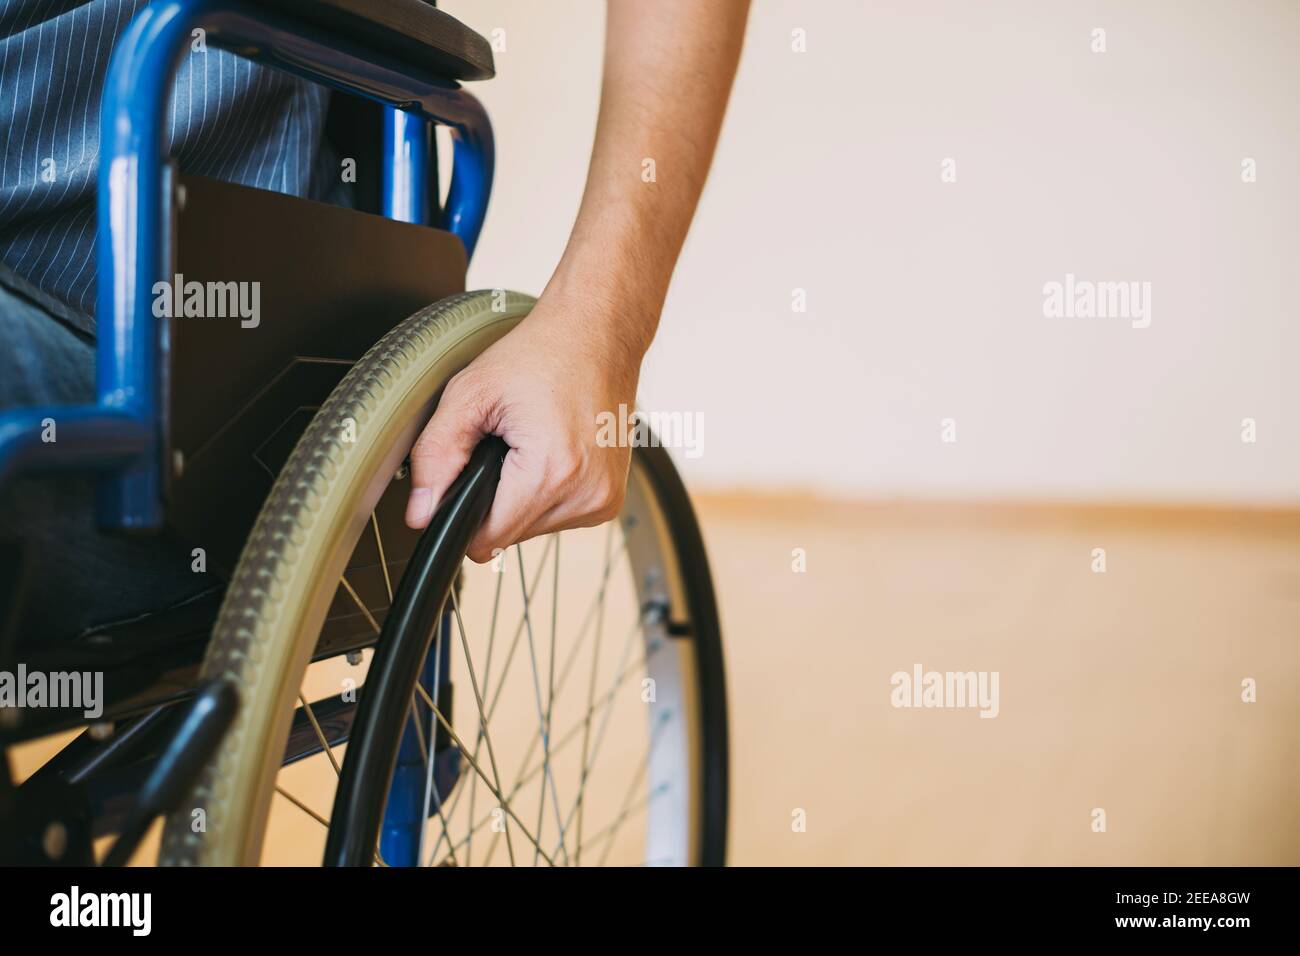 Menschen mit Behinderungen können überall im öffentlichen Raum mit zugreifen Rollstuhl, die sie unabhängig im Transport machen Stockfoto